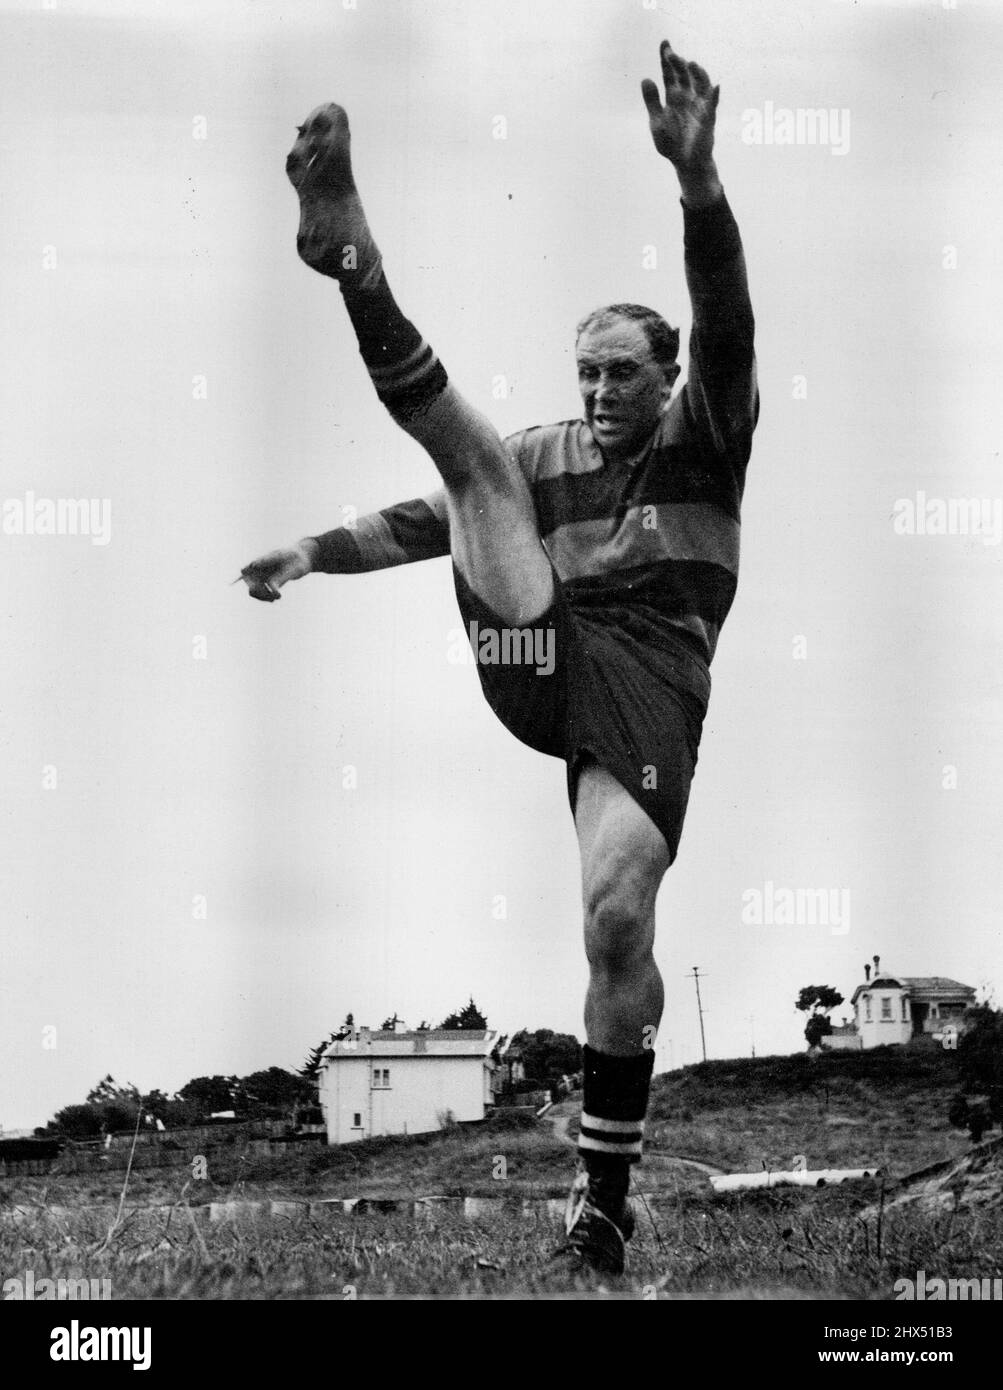 Alla luce grigia dell'alba Bob Scott si impigorì la gamba in preparazione all'avvicinarsi della stagione di rugby del 1948 ad Auckland. Anche se è molto fortemente costruito è flessibile come un ballerino ballerino ballerino/come questa immagine mostra. Indossa la sua maglia Ponsonby Club. Luglio 13, 1951. Foto Stock